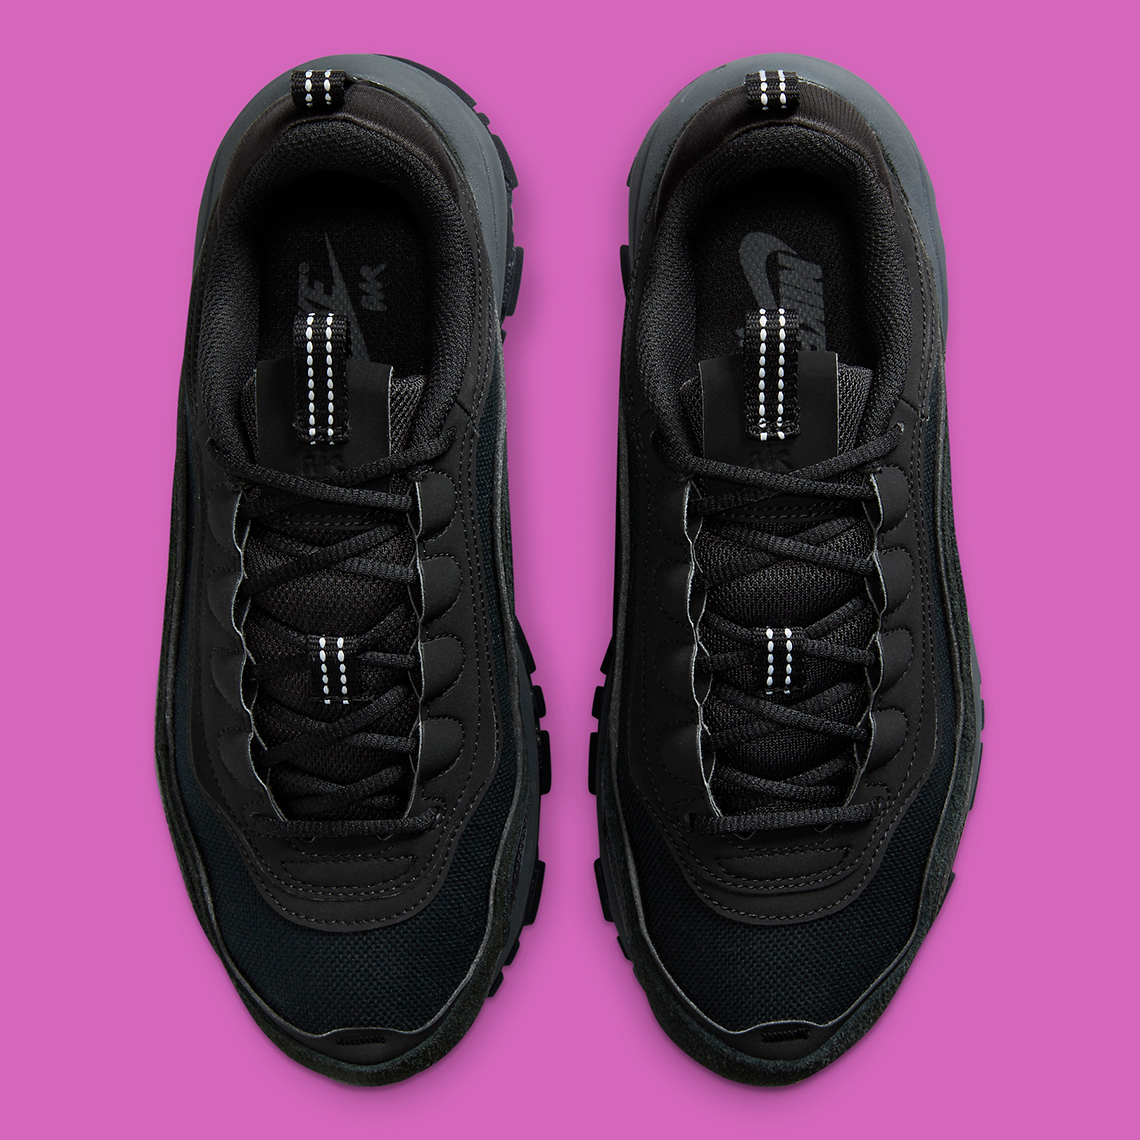 Air max 97: Nike Air Max 97 Futura “Triple Black” shoes